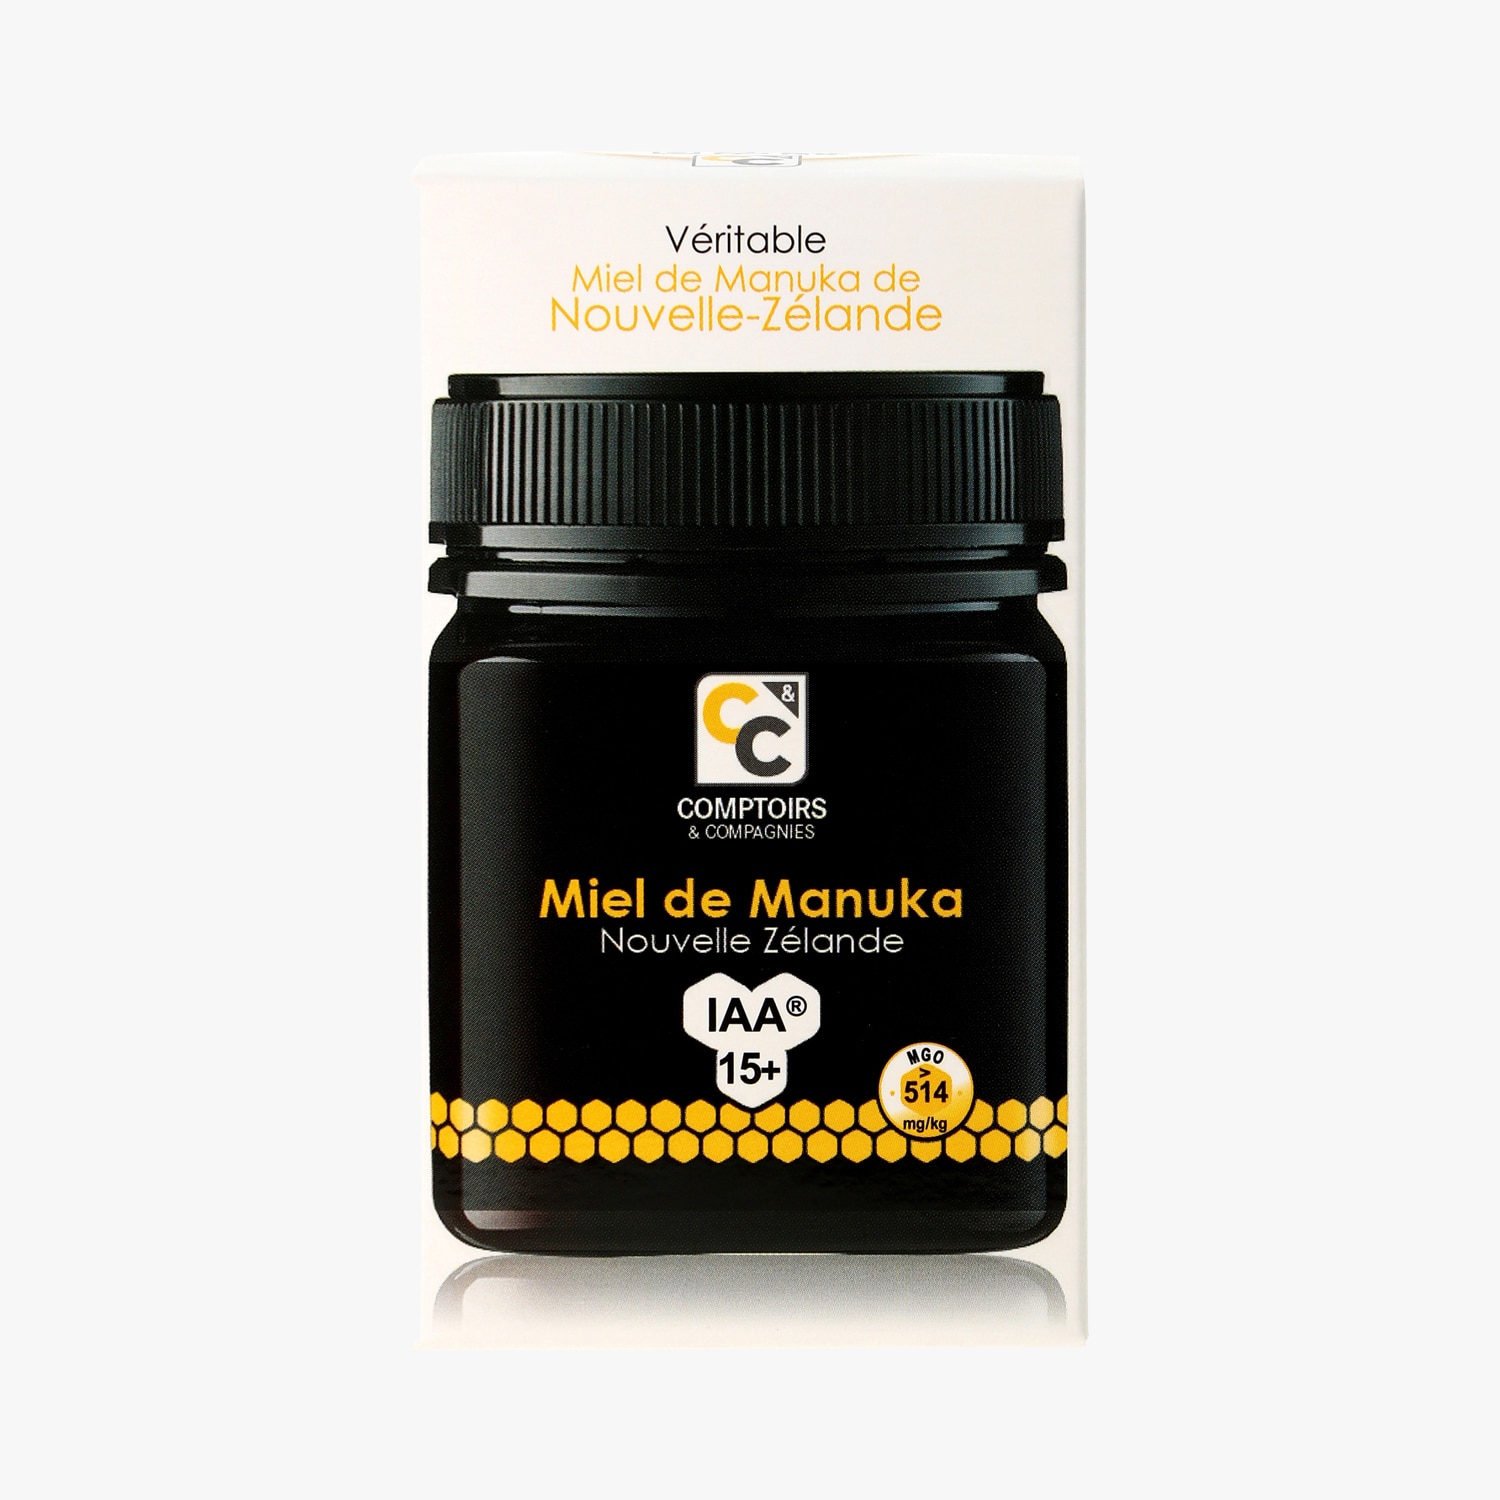 Miel de Manuka IAA15+, Nouvelle-Zélande, 250 g - Comptoirs et Compagnies